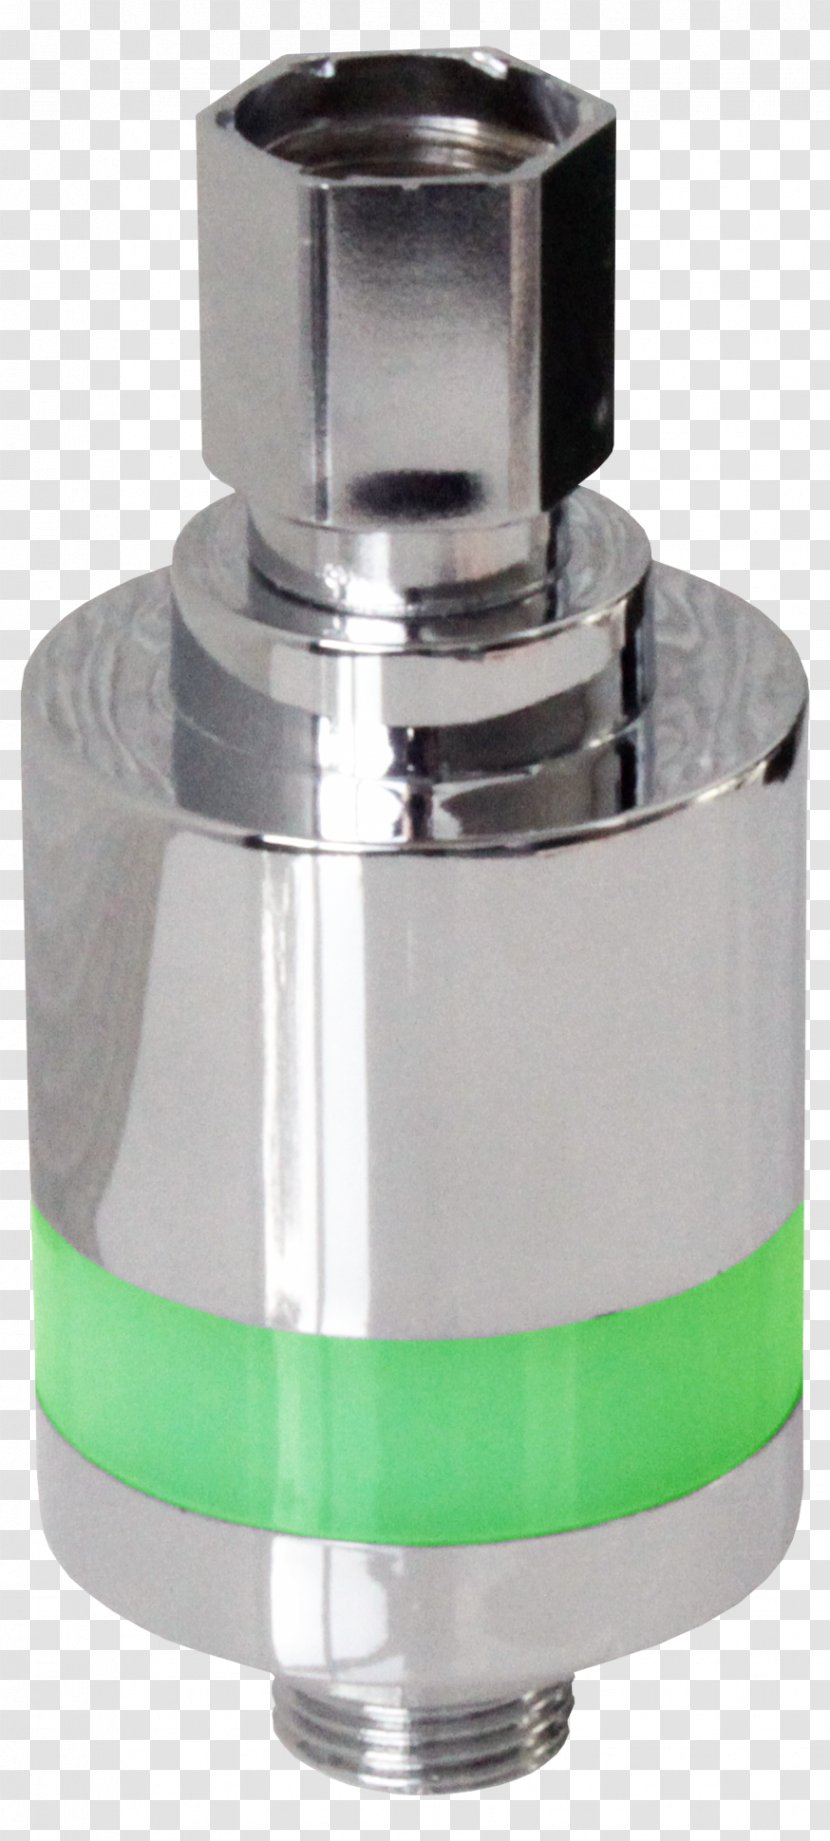 Shower Timer Toilet Irrigation Sprinkler Bateria Wodociągowa - Lightemitting Diode Transparent PNG